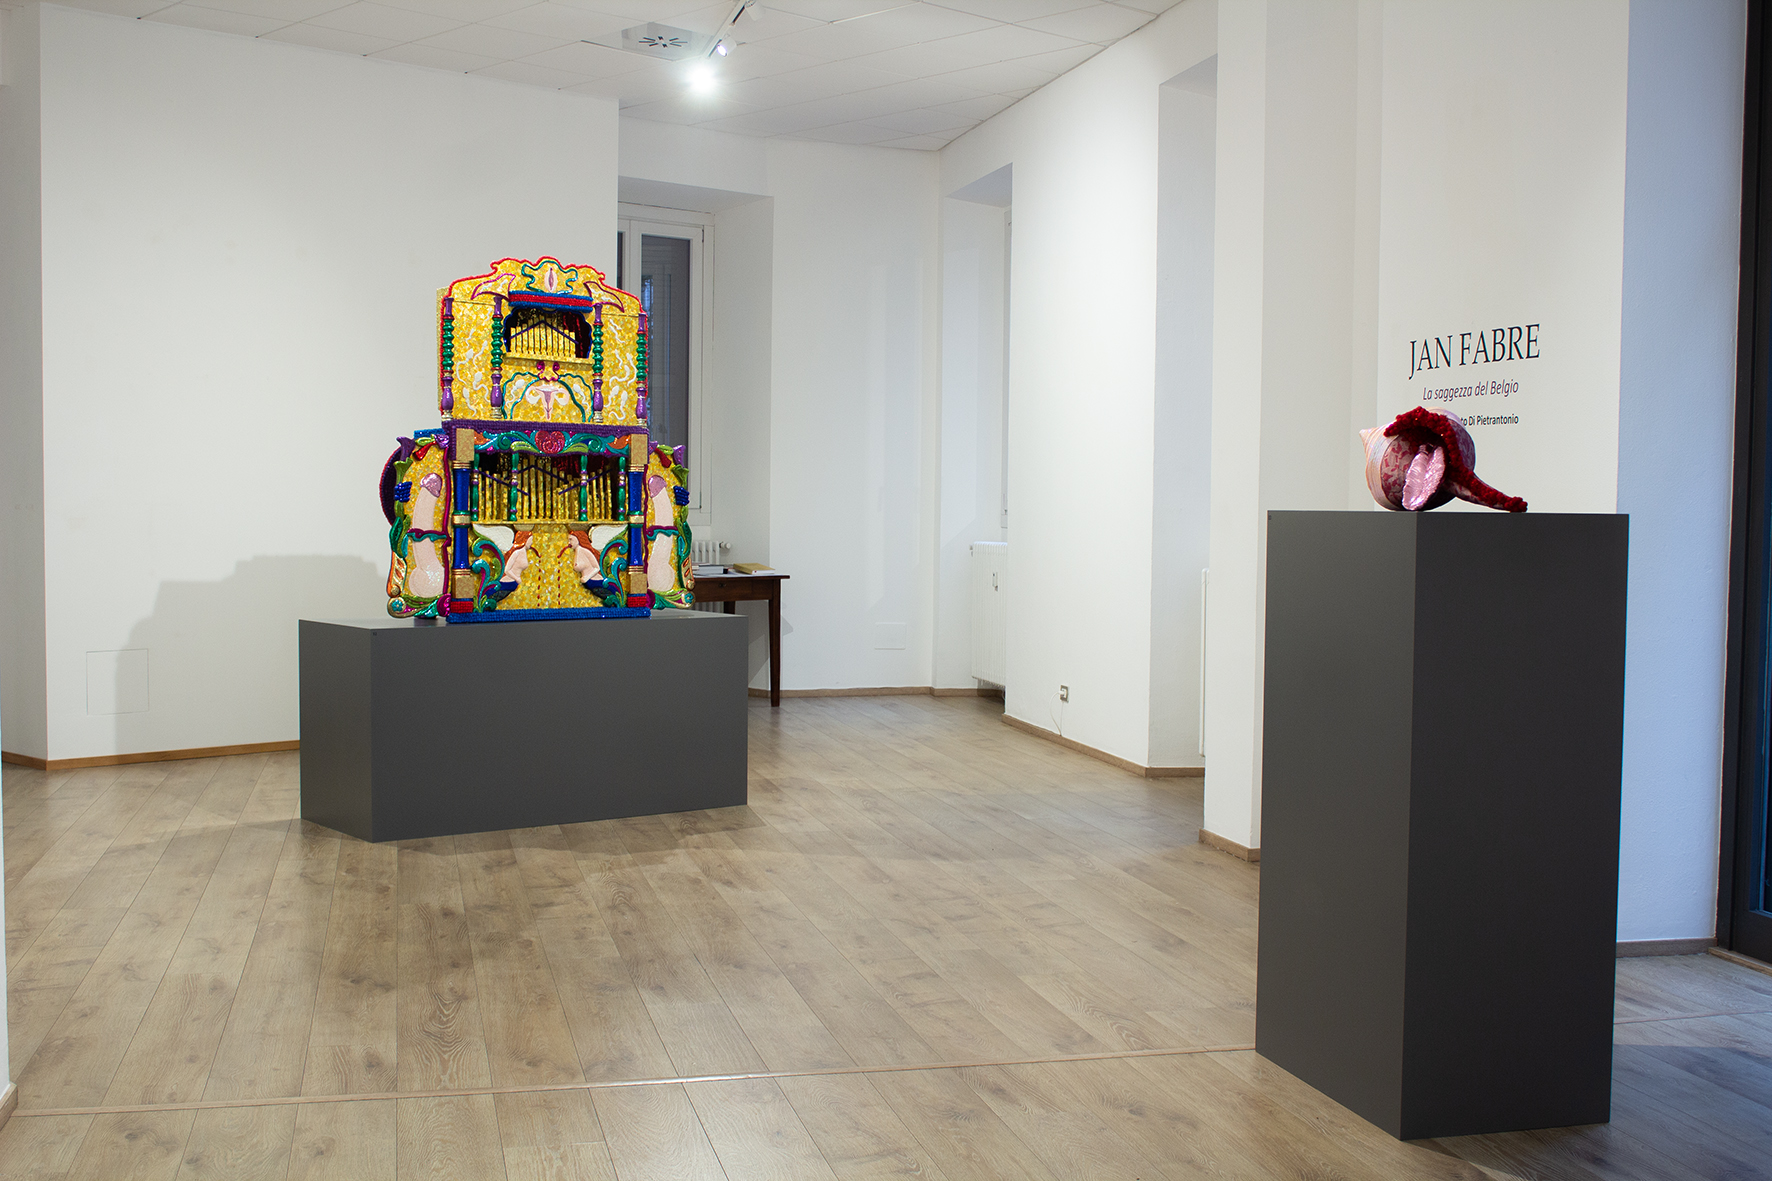 Installation view della mostra Jan Fabre. La saggezza del Belgio.  Courtesy: Galleria Gaburro, Verona-Milano. Photocredit: Ignazio Giordano.